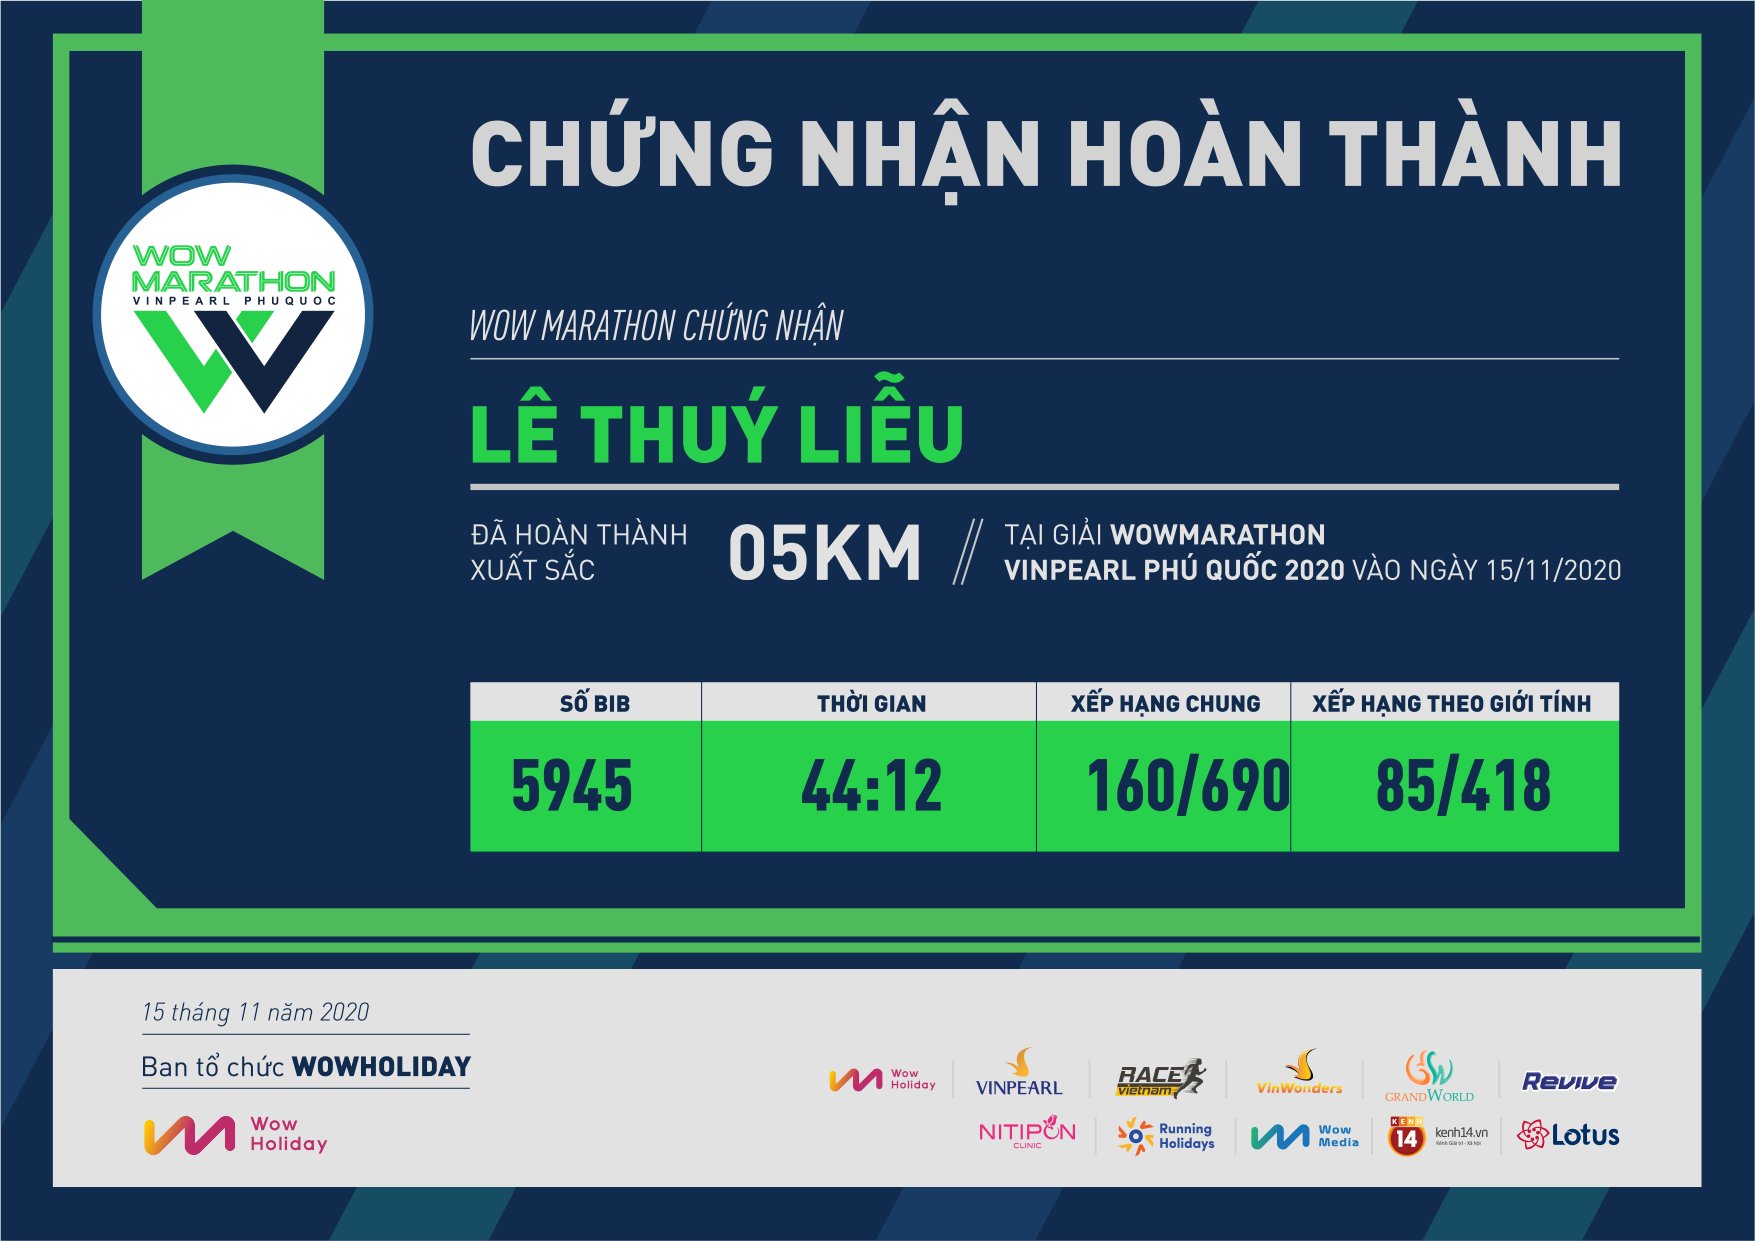 5945 - Lê Thuý Liễu